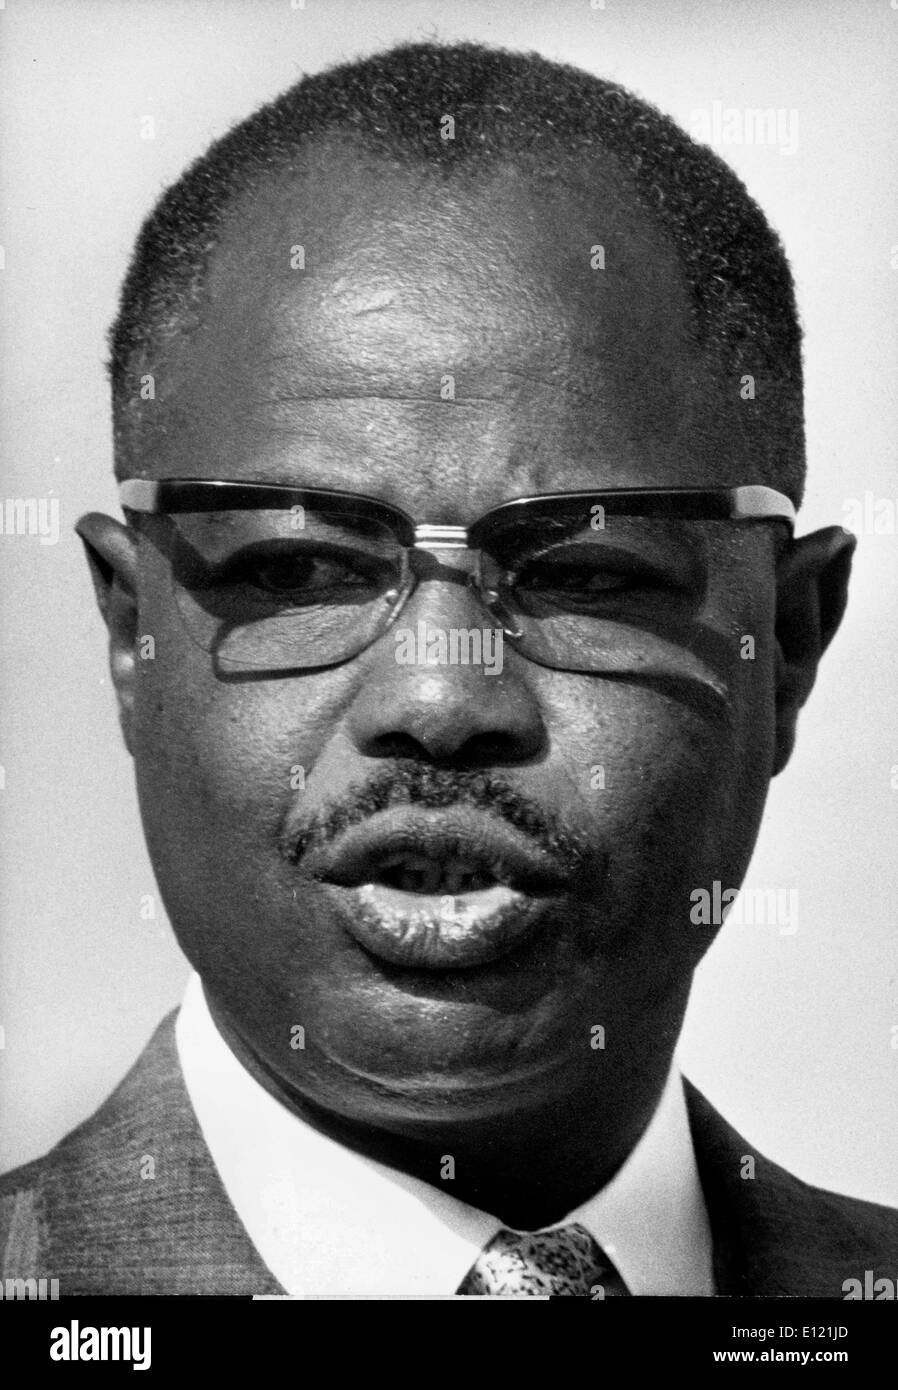 Nov 07, 1981; Yaoundé, Camerún; AHMADOU BABATOURA AHIDJO El 24 de agosto de 1924 el 30 de noviembre de 1989, fue el presidente del Camerún desde 1960 hasta 1982, cuando Camerún obtuvo la independencia en 1960. Fue reelegido en 1965, 1970, 1975 y 1980. Él experimentó una rebelión en 1960. A principios de la década de 1970 creó una constitución impopular que terminó la autonomía del Camerún Británico y estableció norma unitaria. Aunque muchas de sus acciones se dictatorial, su país se convirtió en uno de los más estables de África. (Crédito de la imagen: imágenes de KEYSTONE USA/ZUMAPRESS.com) Foto de stock